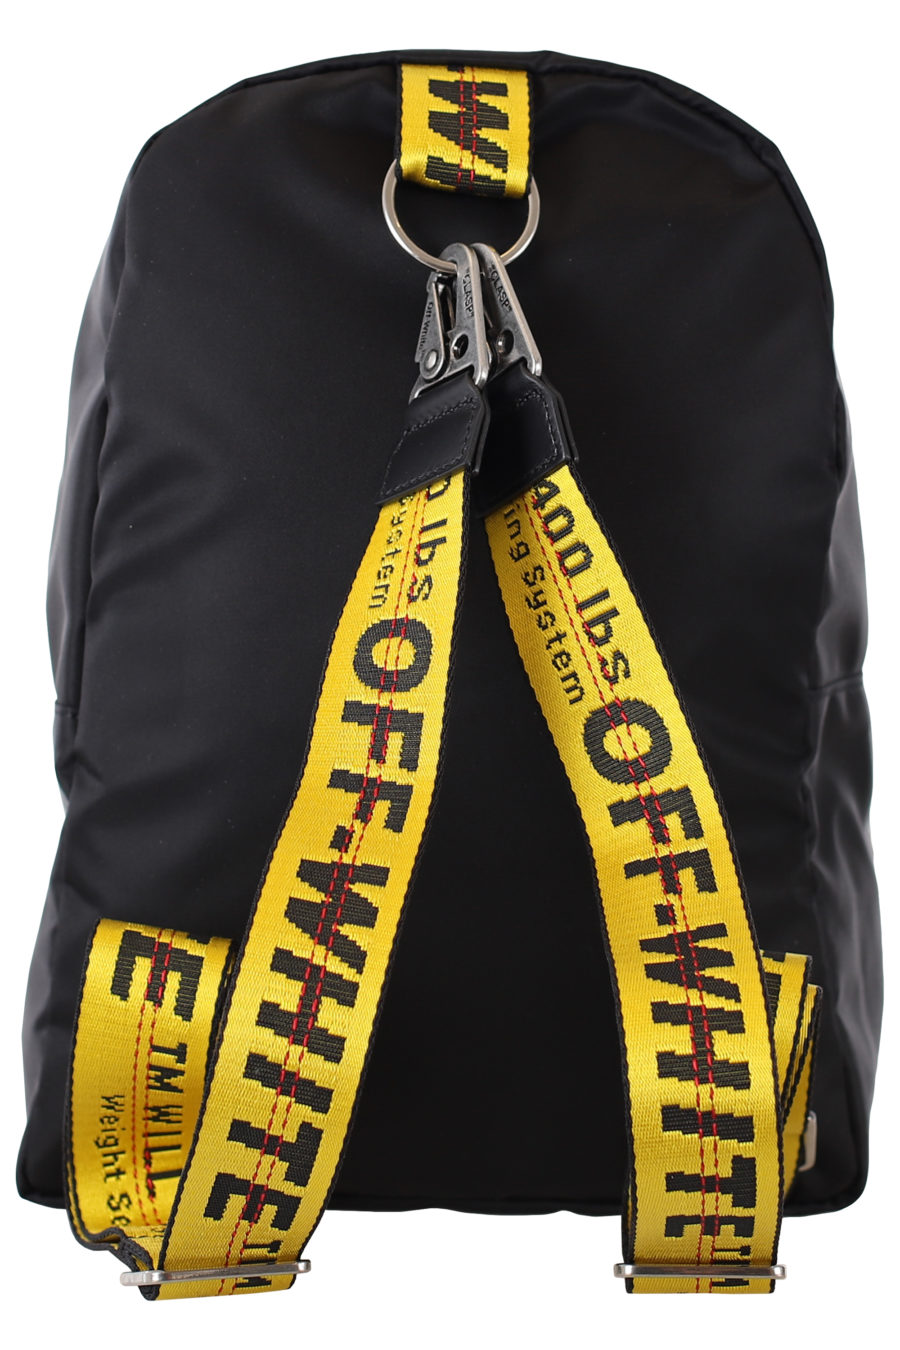 Mini mochila preta com logótipo das setas e alça amarela - IMG 2262